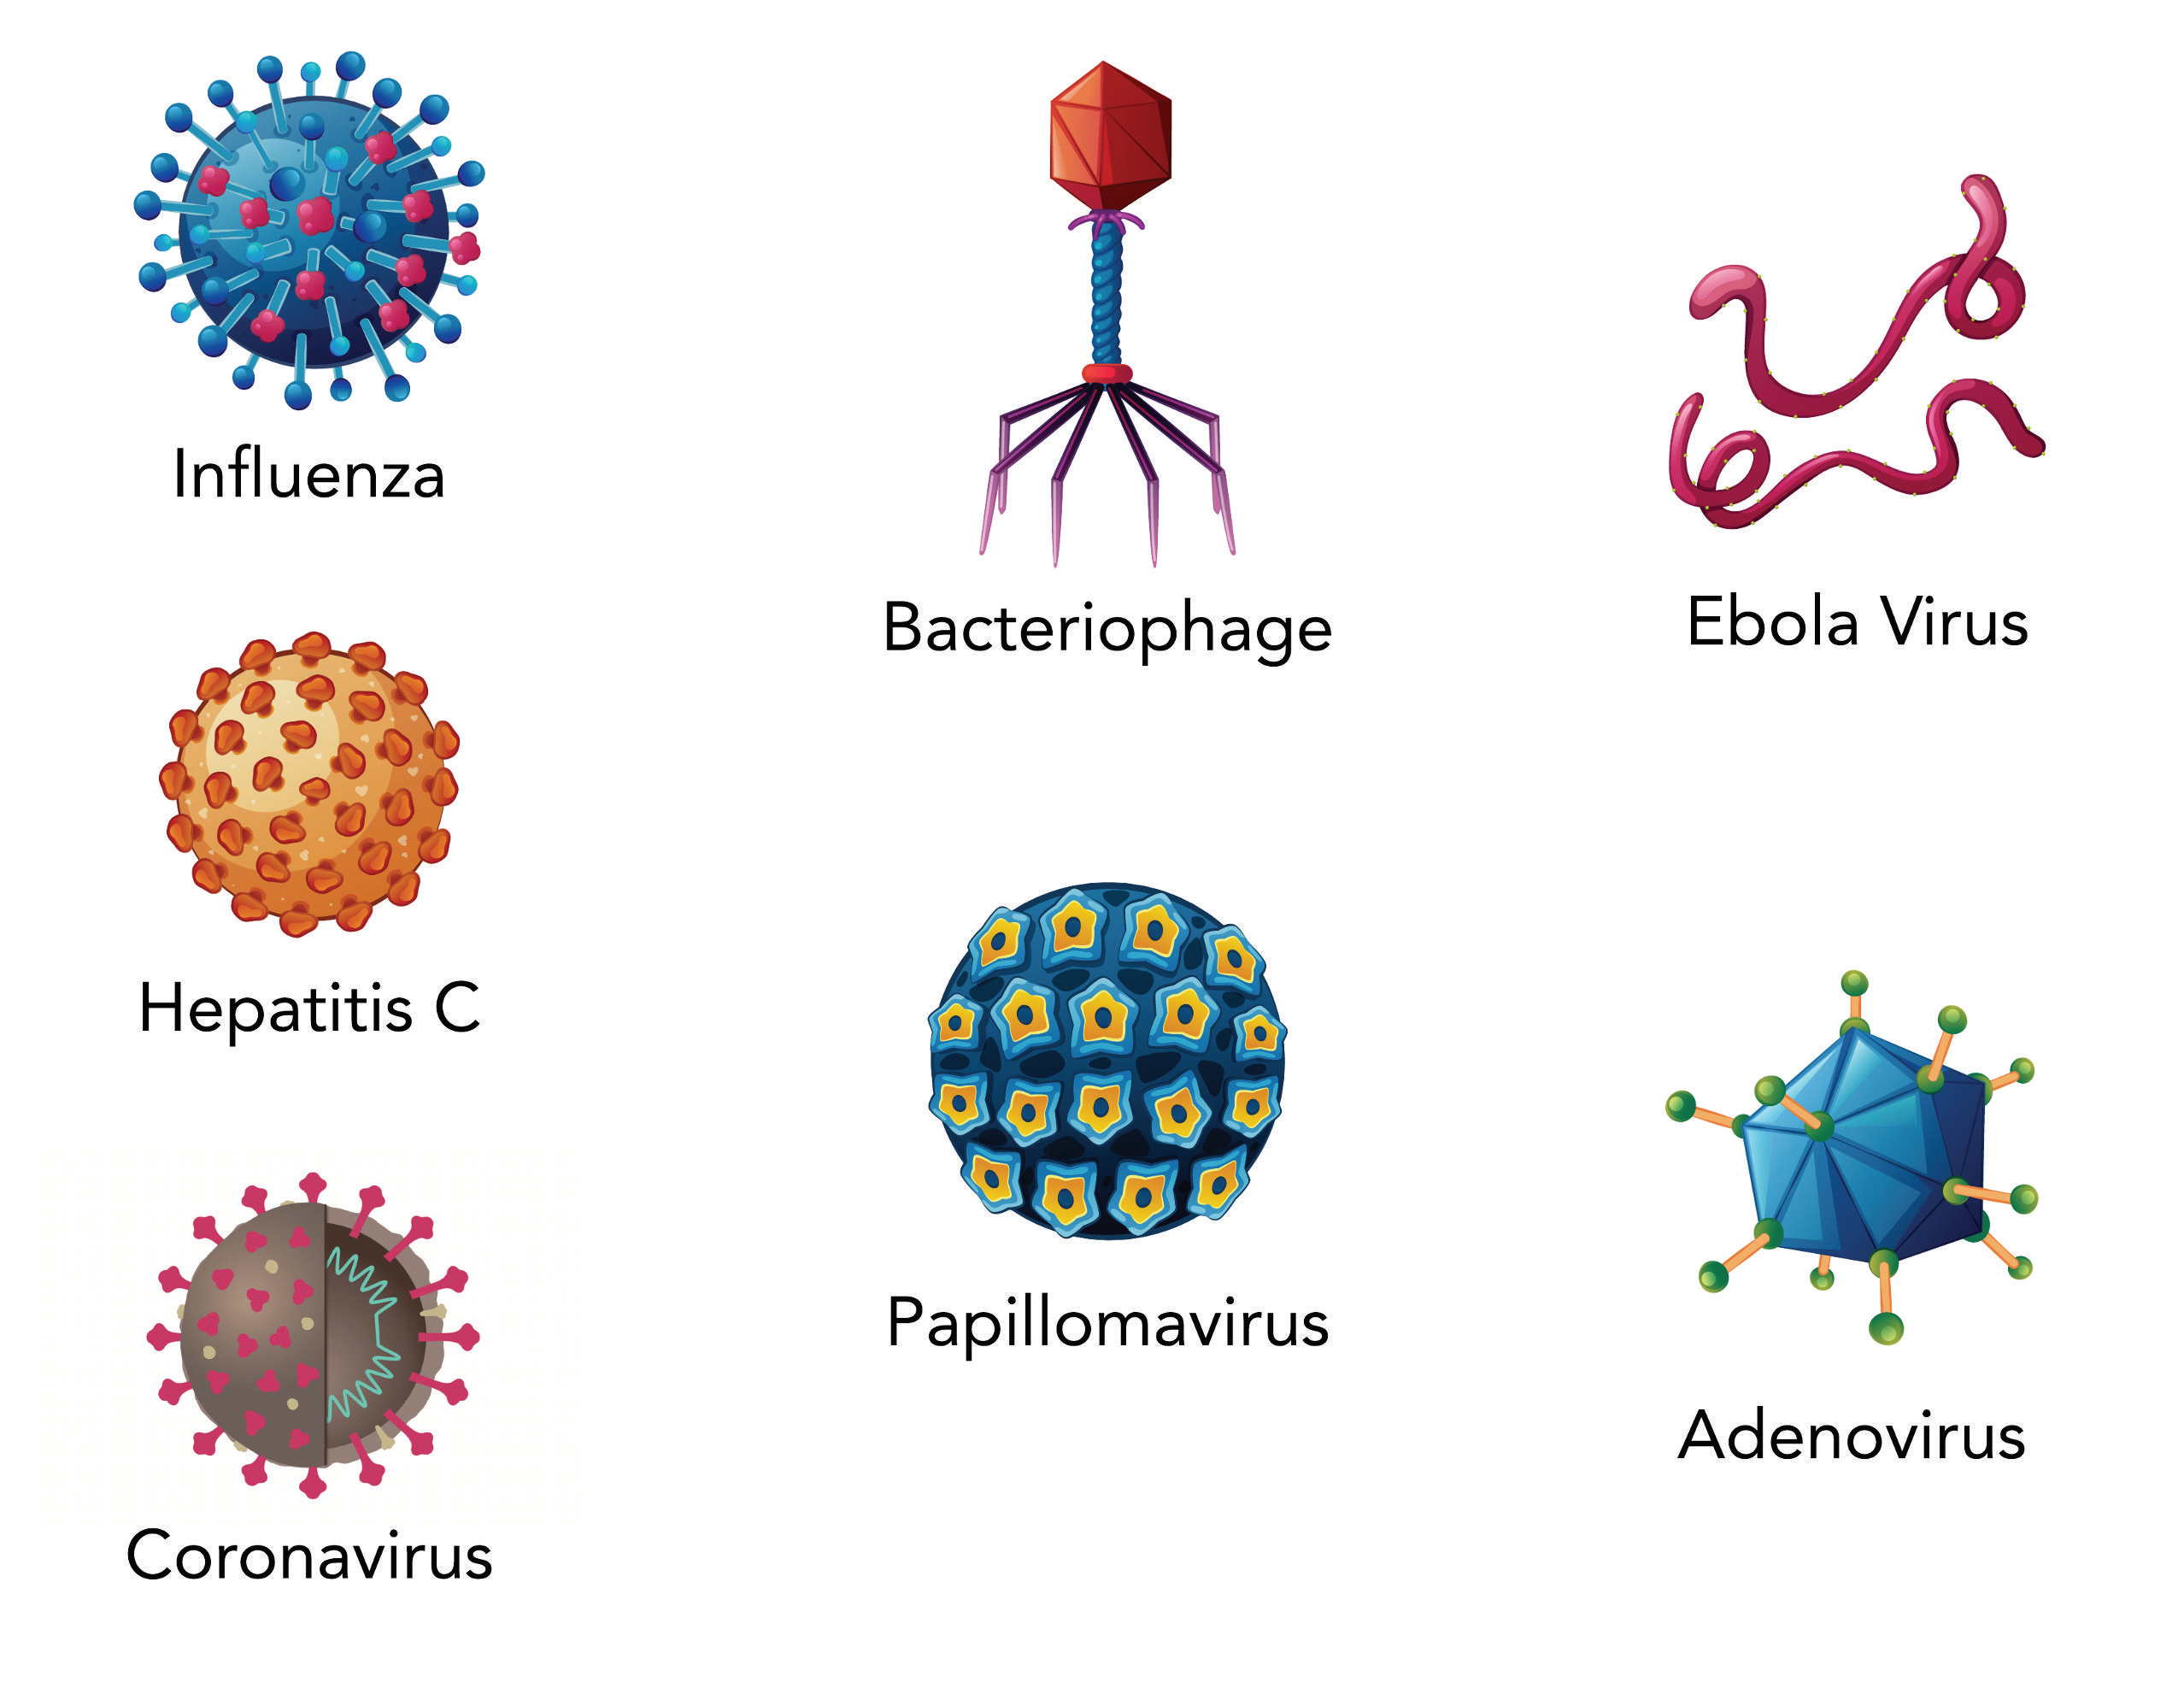 Drawings of various virus: Influenza, Bacteriophage, Ebola virus, Hepatitis C, Papillomavirus, Adenovirus, and Coronavirus